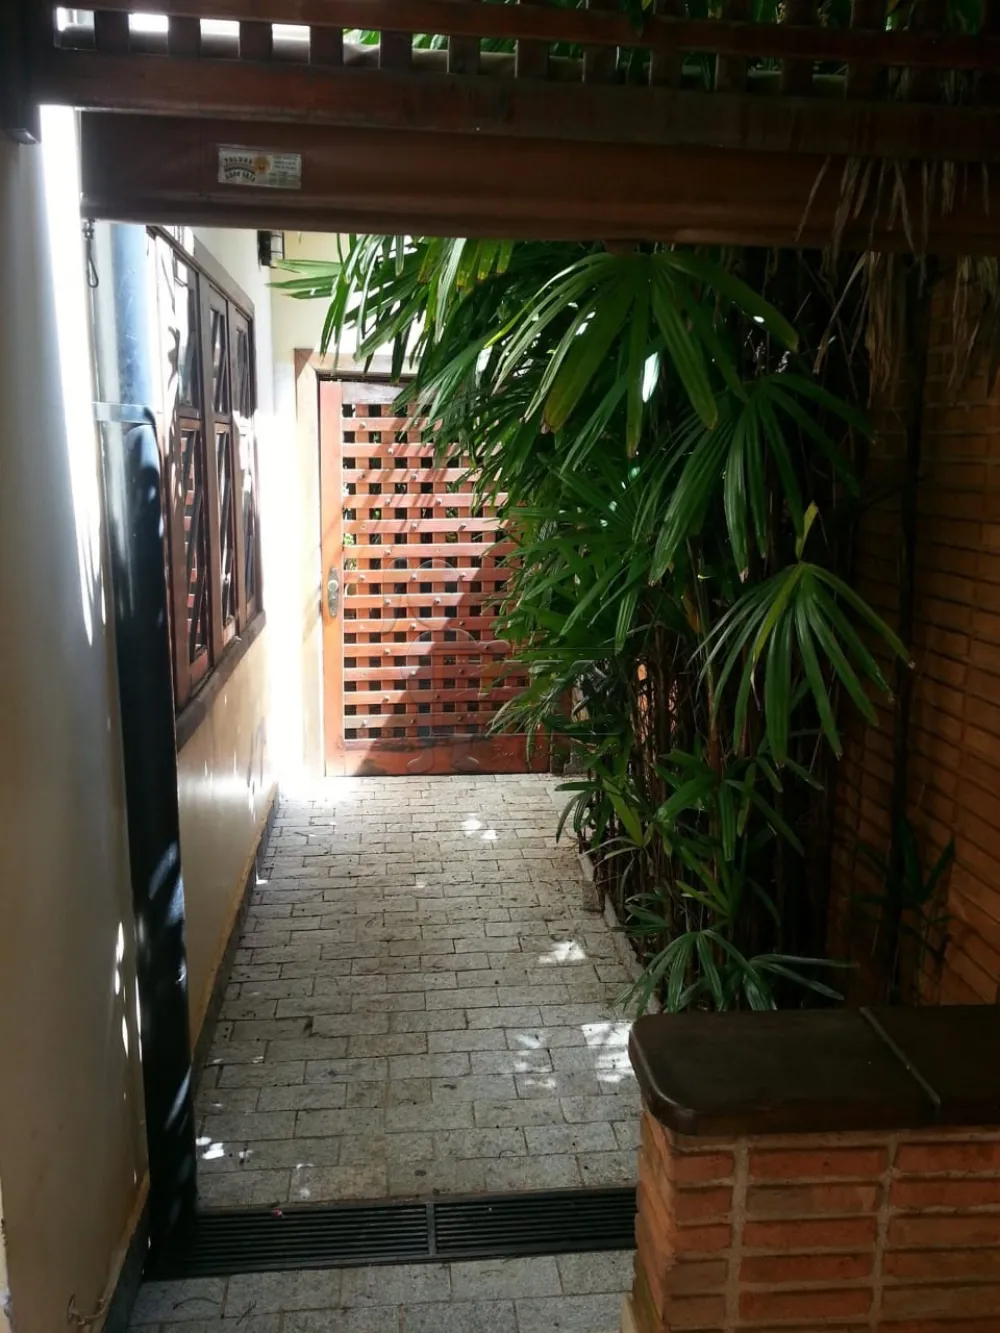 Alugar Casas / Padrão em Ribeirão Preto R$ 5.500,00 - Foto 5